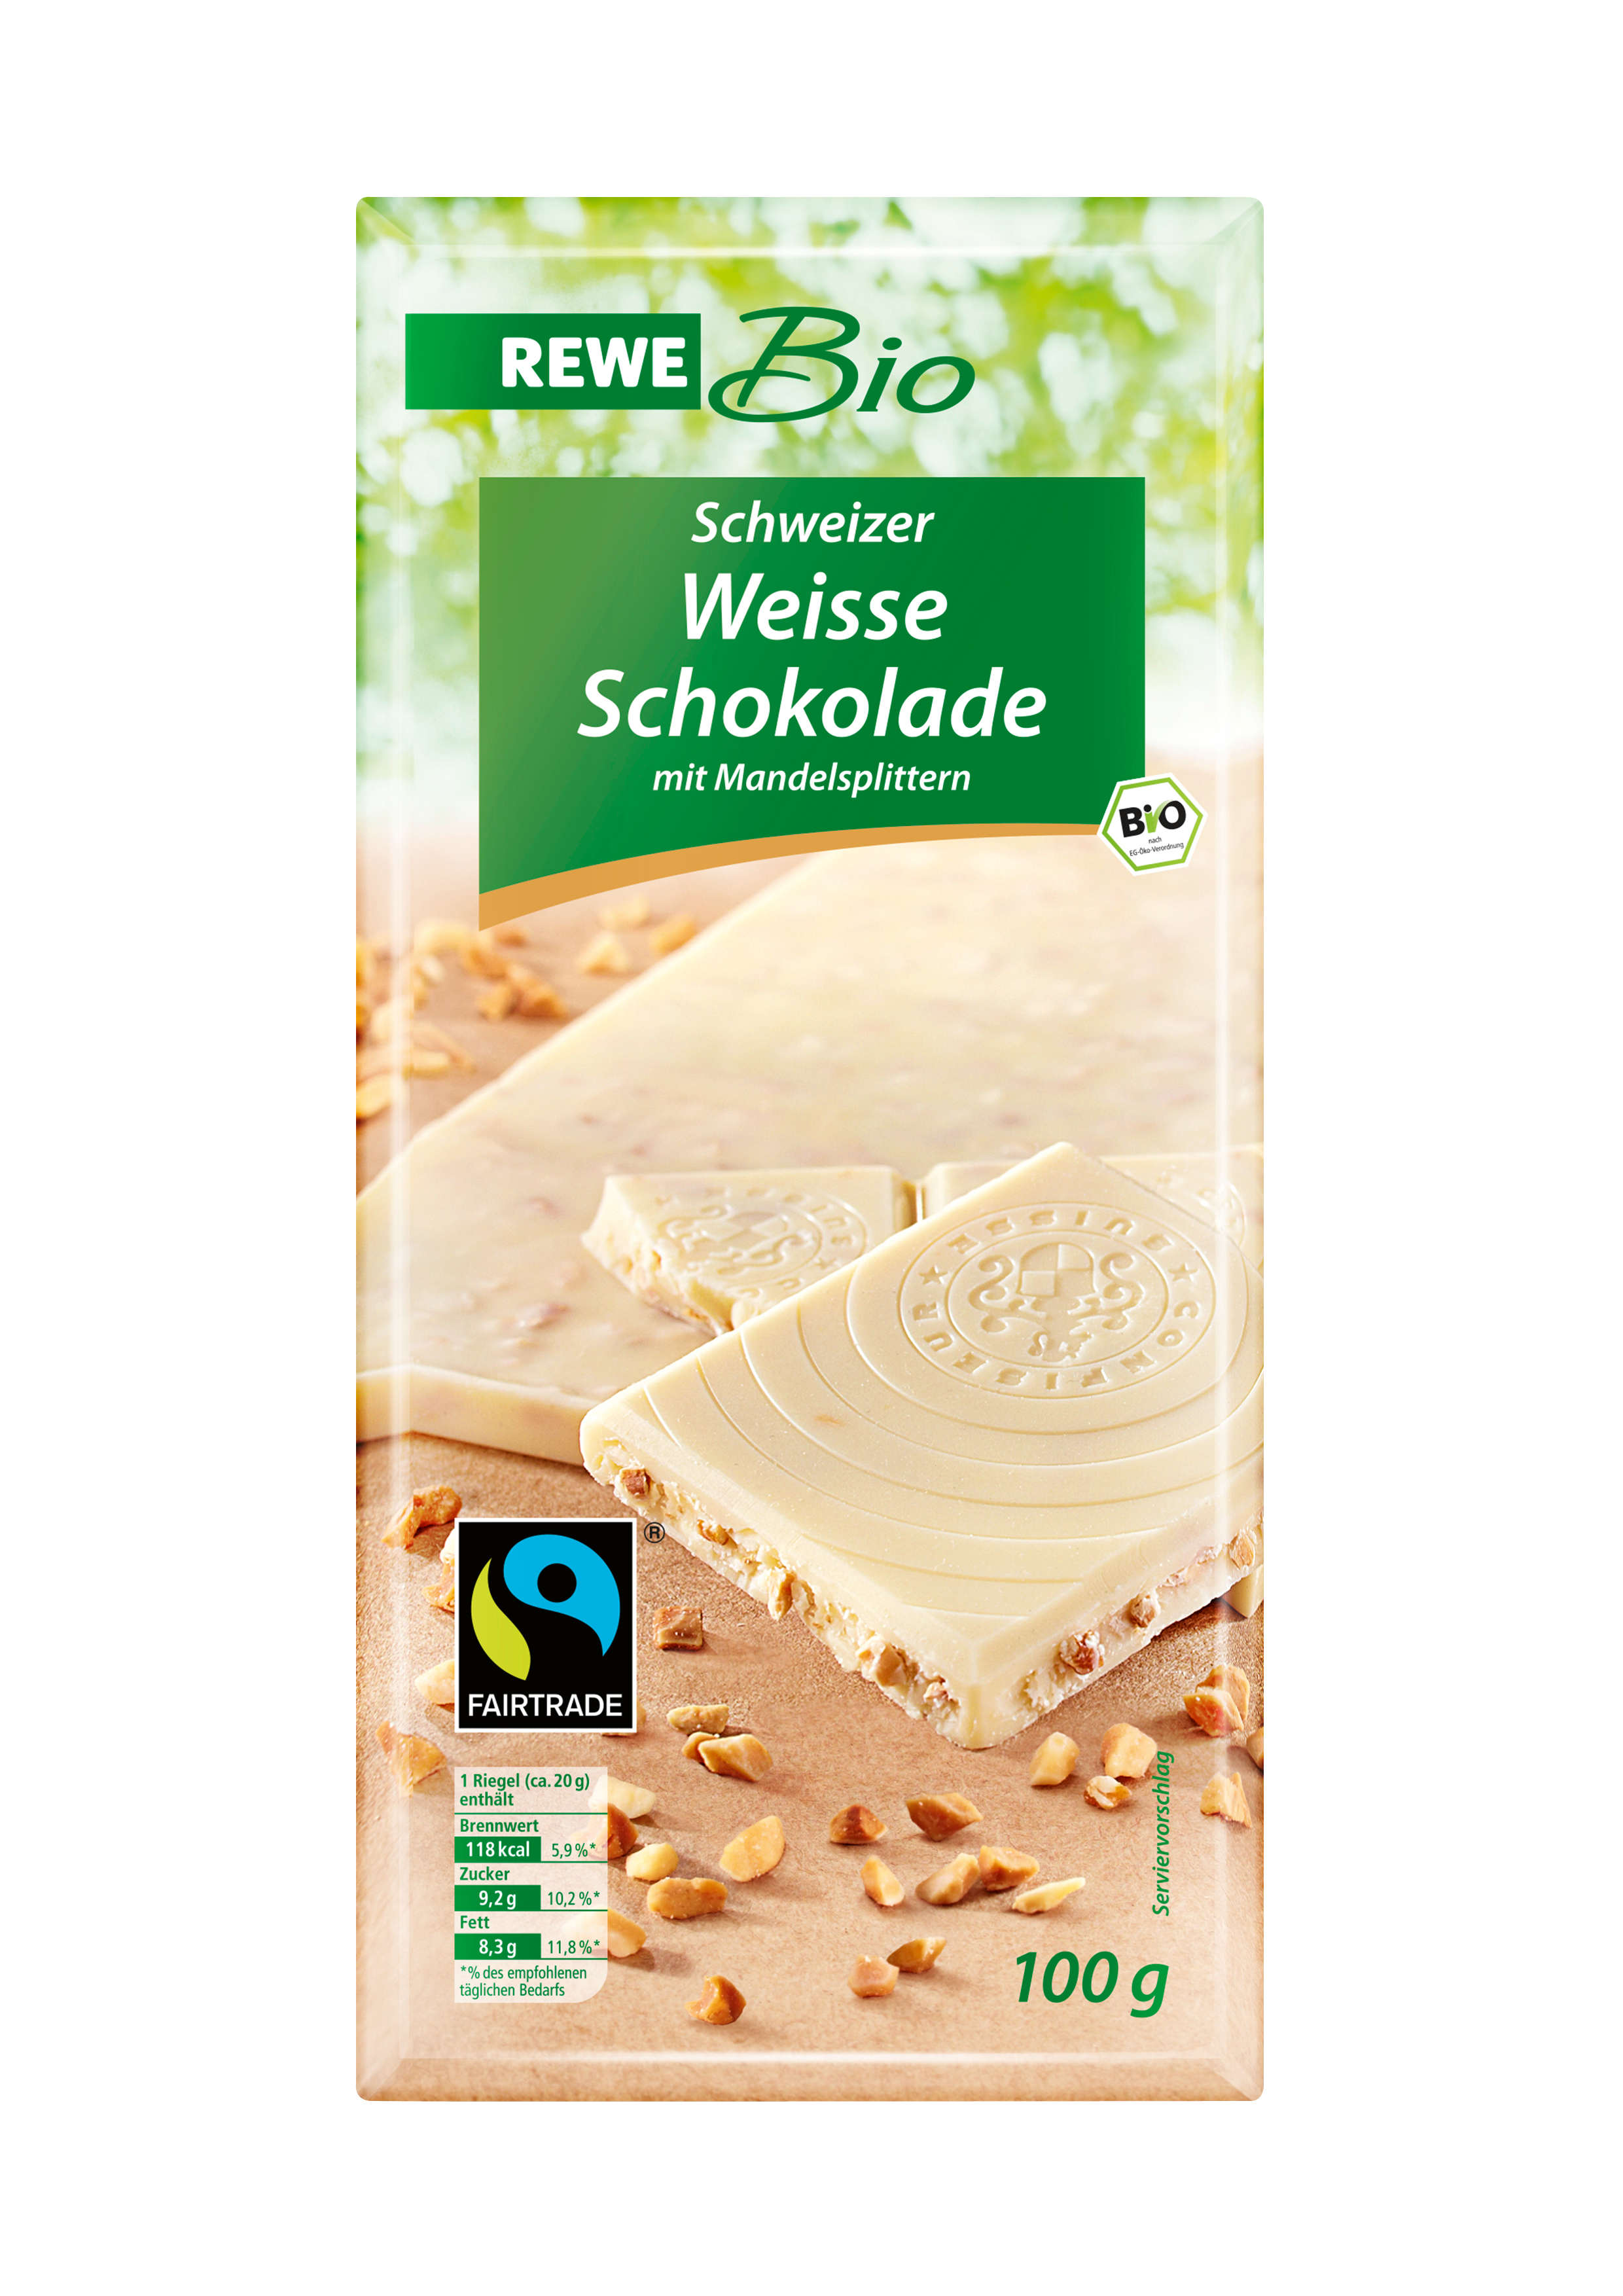 REWE Bio Schweizer Weisse Schokolade mit Mandelsplittern-